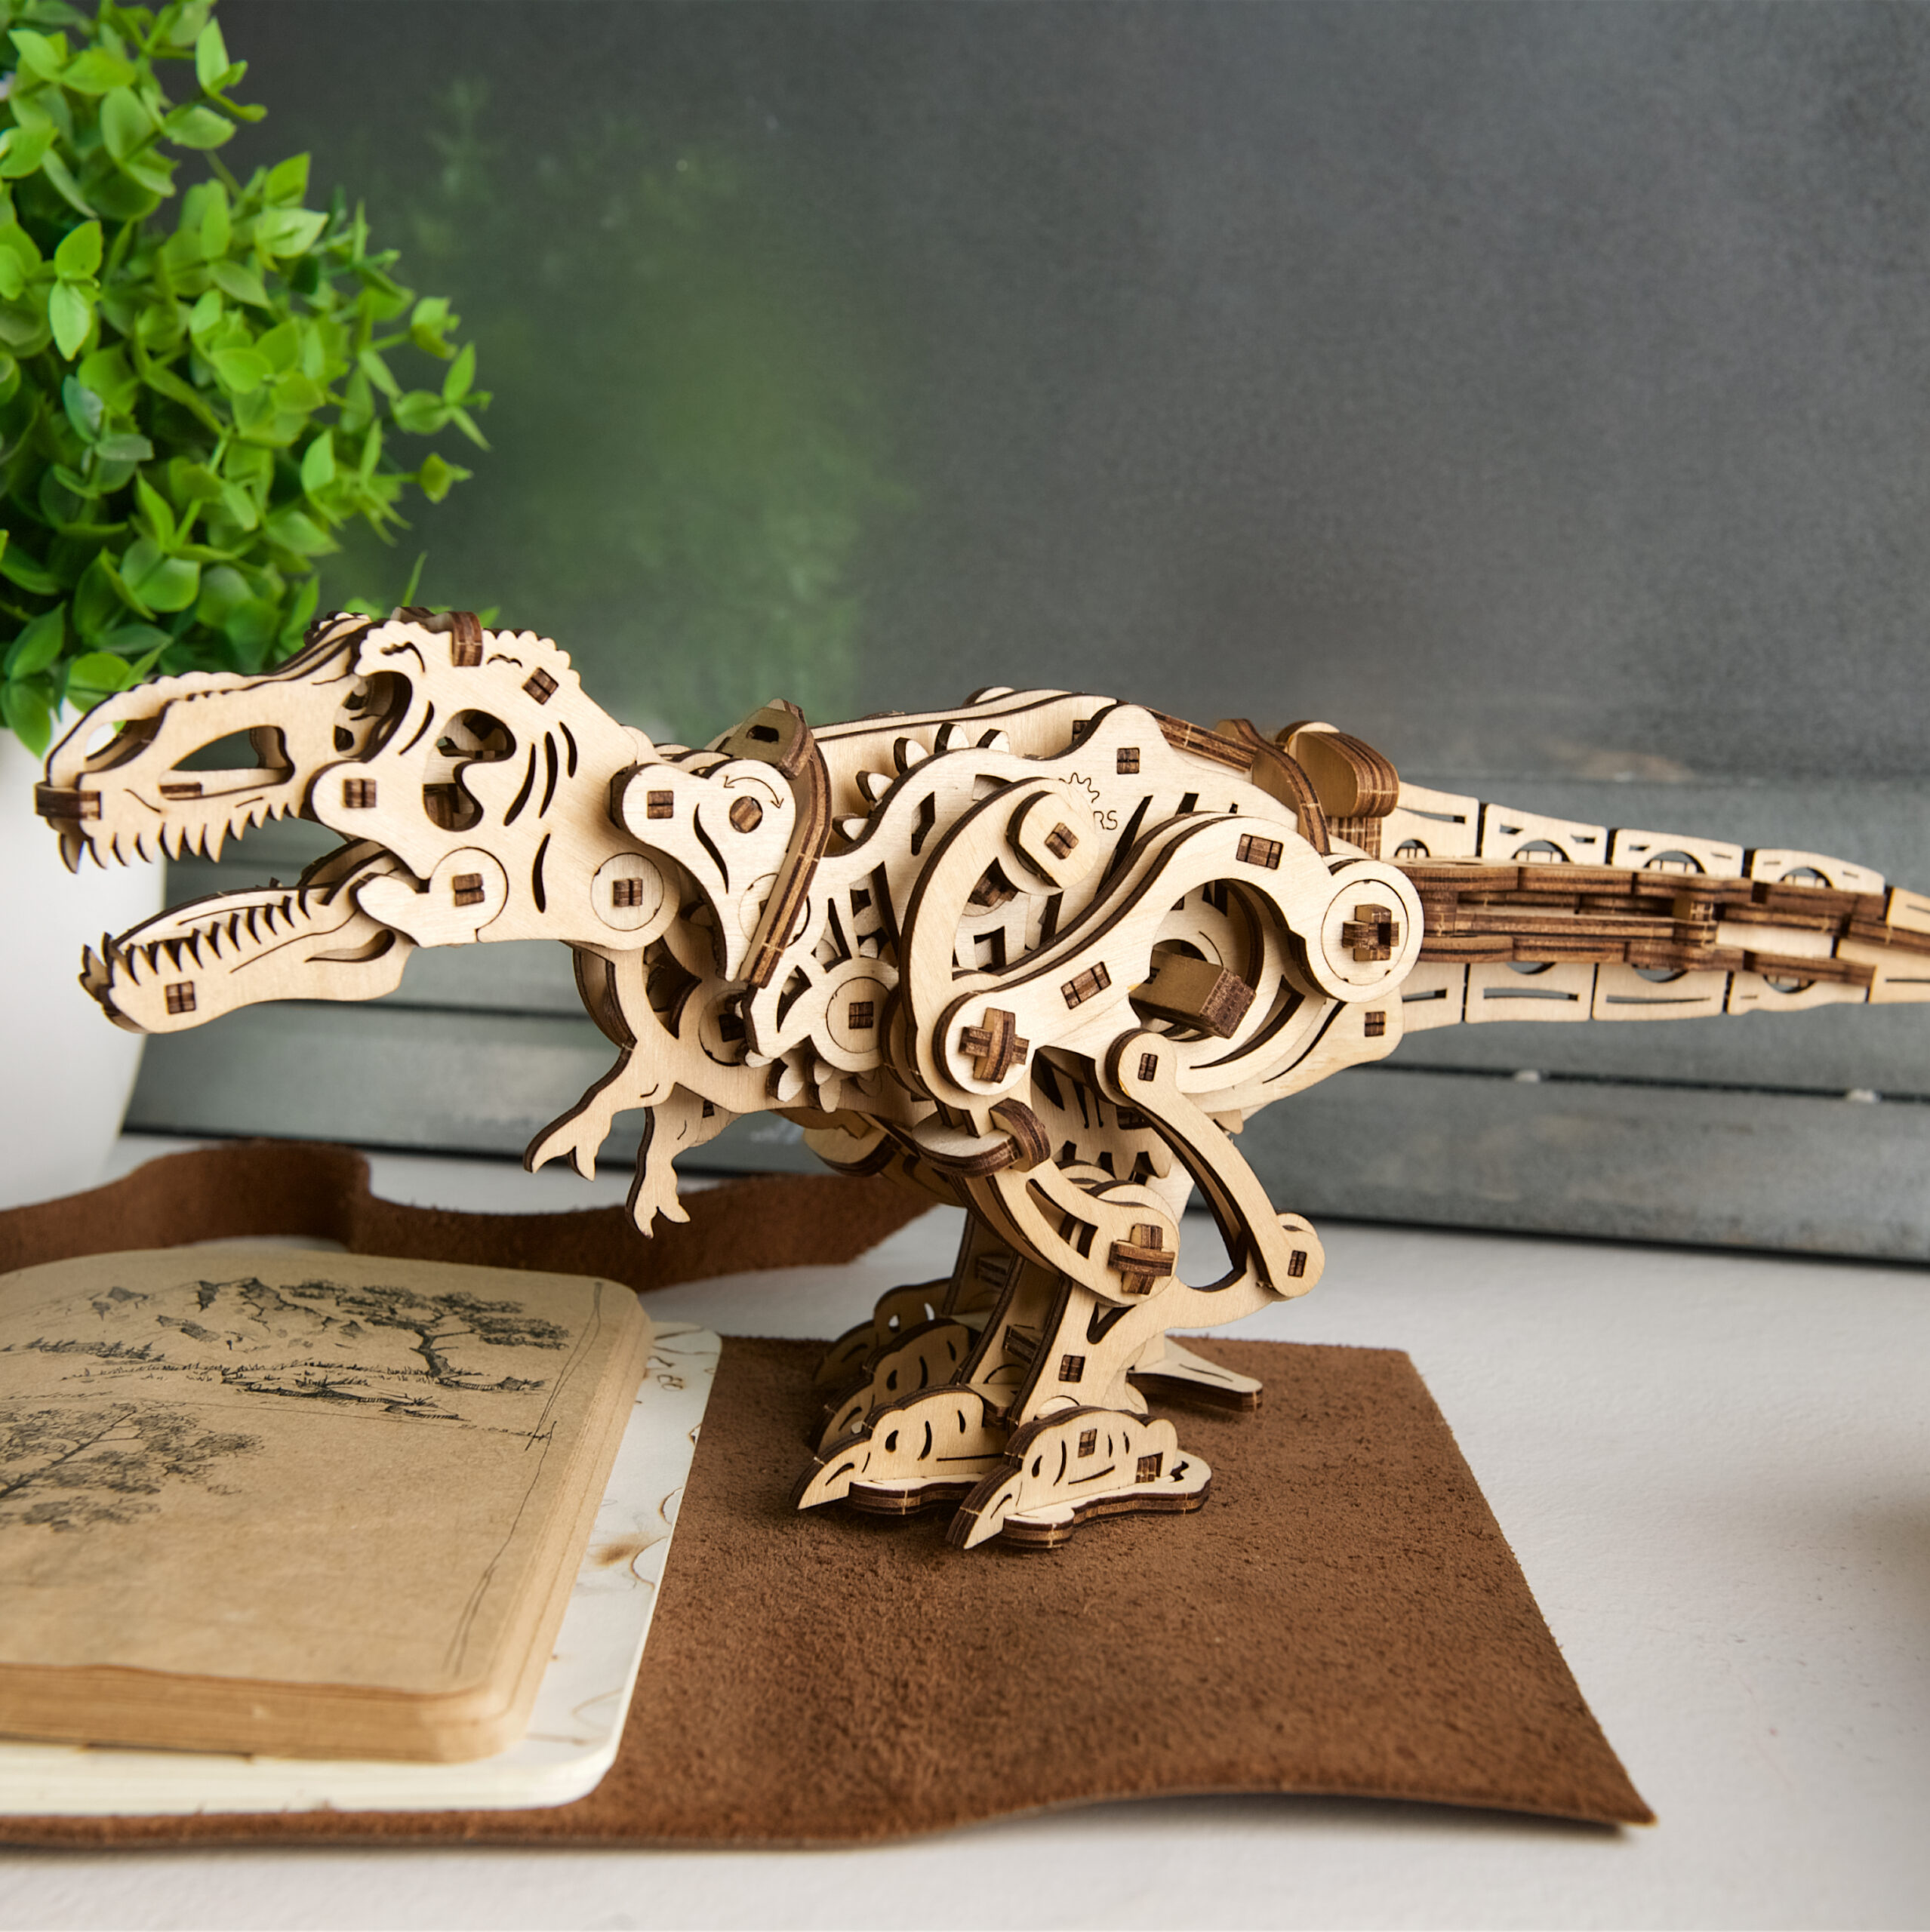 Animaux en bois puzzle 3D dinosaure T-rex - Kit de construction Jouets 38,2  x 9 x 28,5 cm